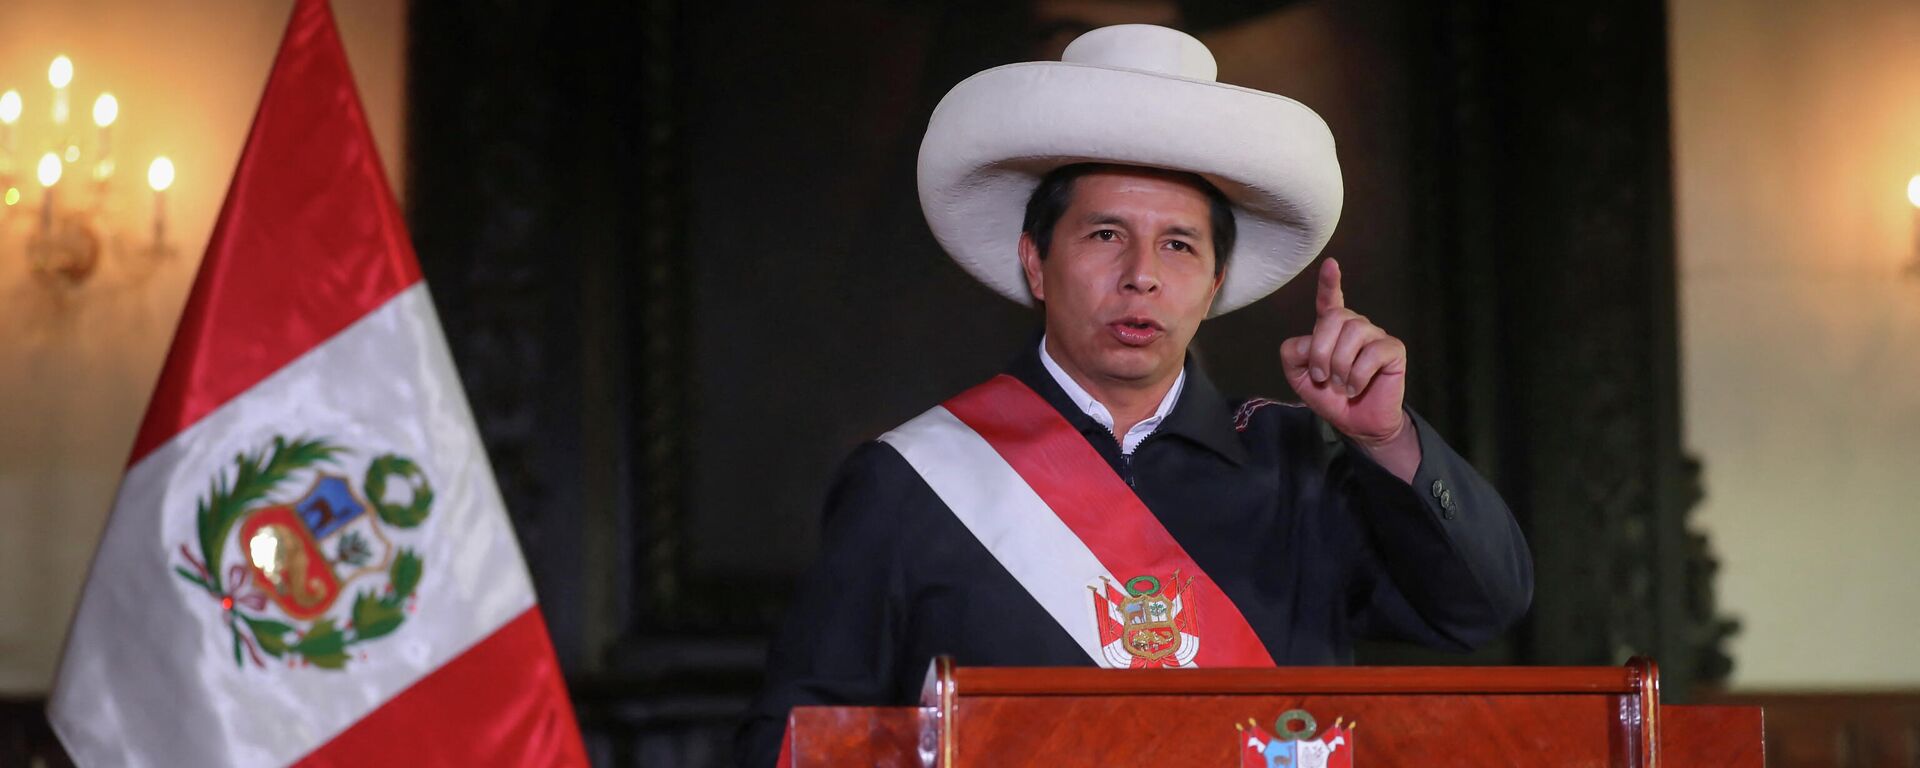 O presidente do Peru, Pedro Castillo, discursa em Lima, capital do país, em 4 de fevereiro de 2022 - Sputnik Brasil, 1920, 08.02.2022